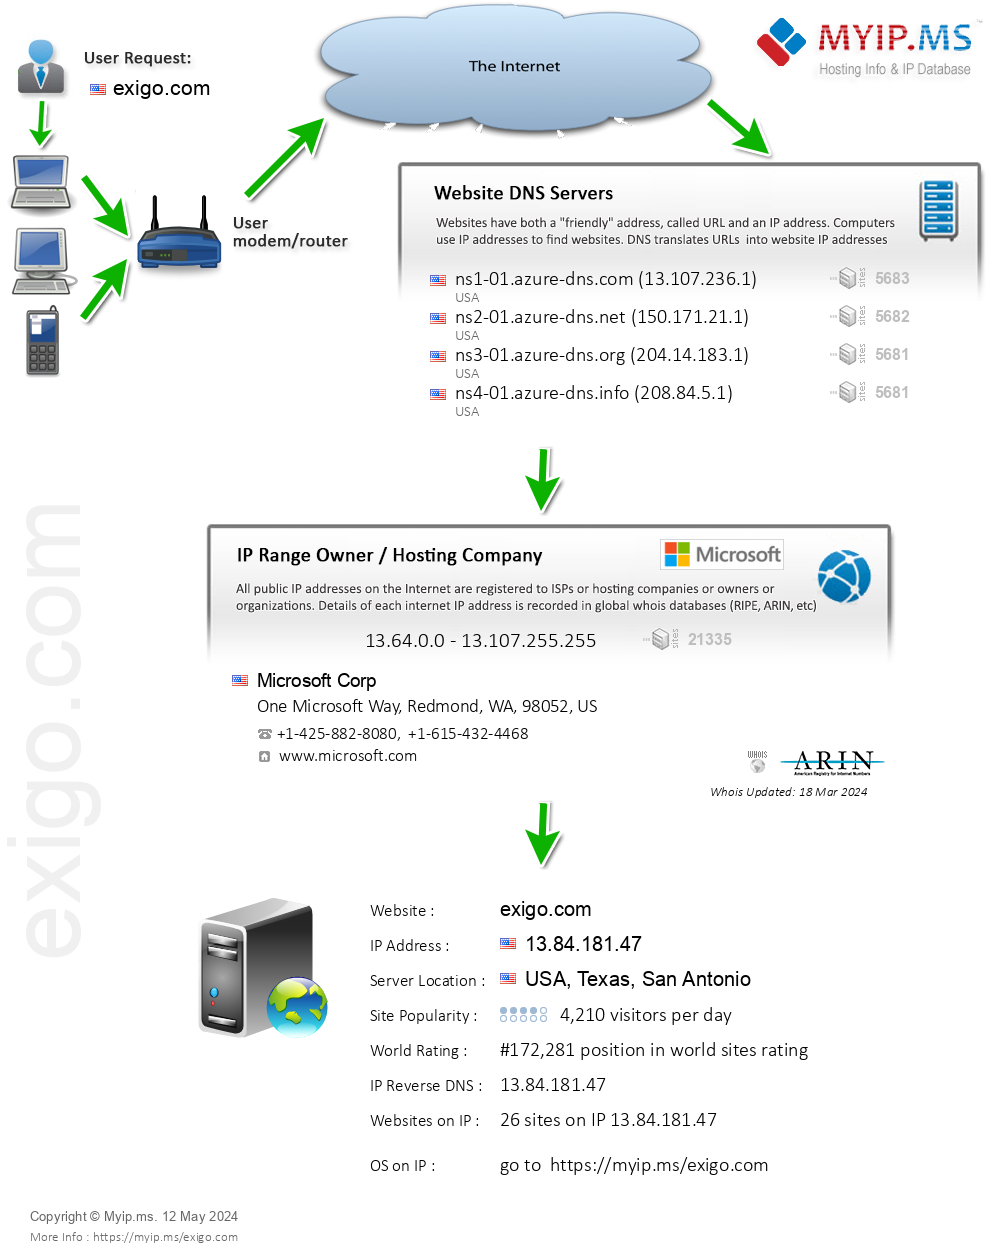 Exigo.com - Website Hosting Visual IP Diagram